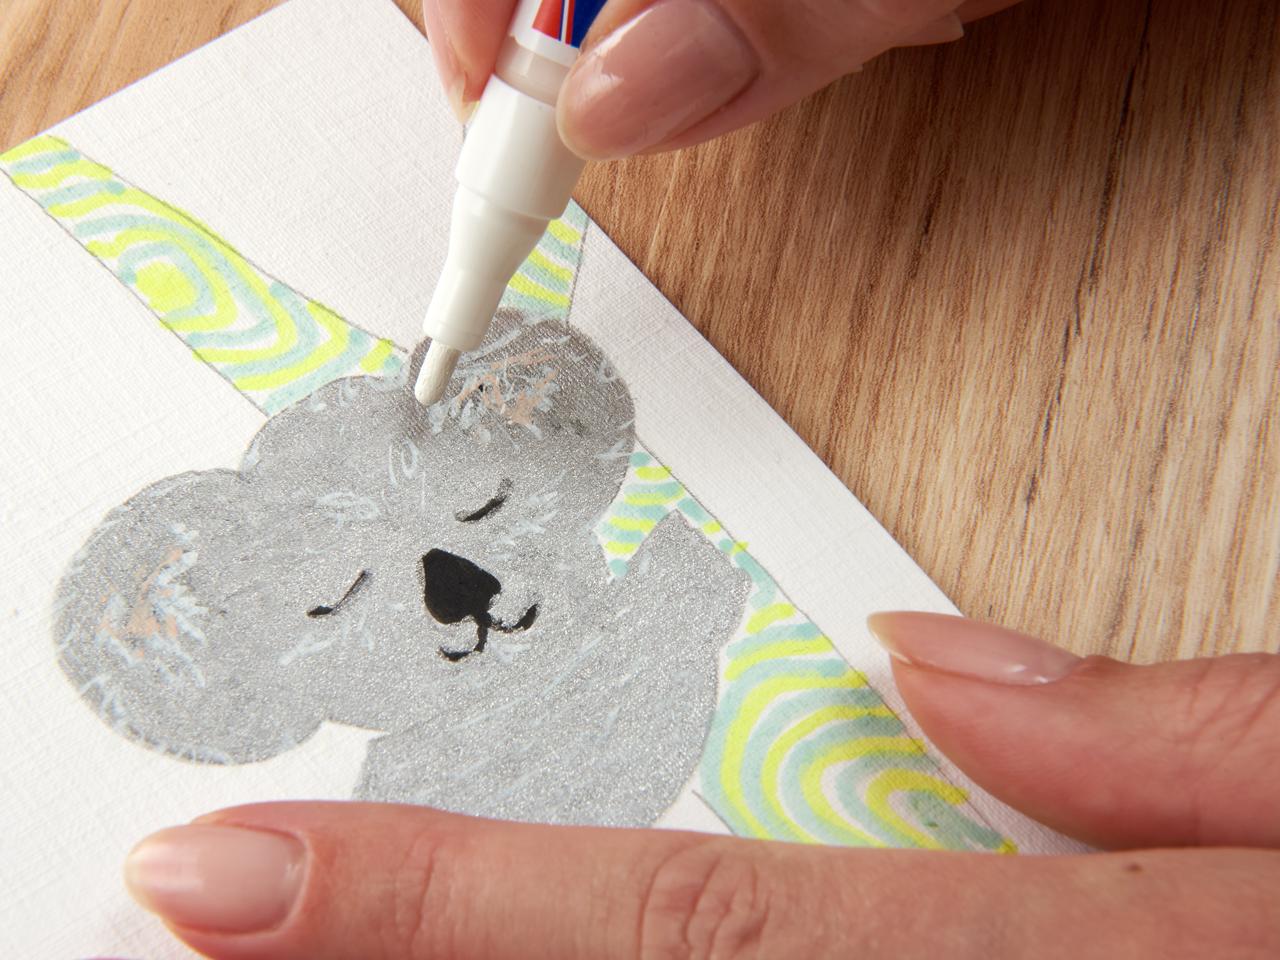 Tragen Sie den edding 5300 Acrylmarker fein von Hand auf einen handgefertigten Bärenausschnitt aus Papier auf einer Holzoberfläche auf.